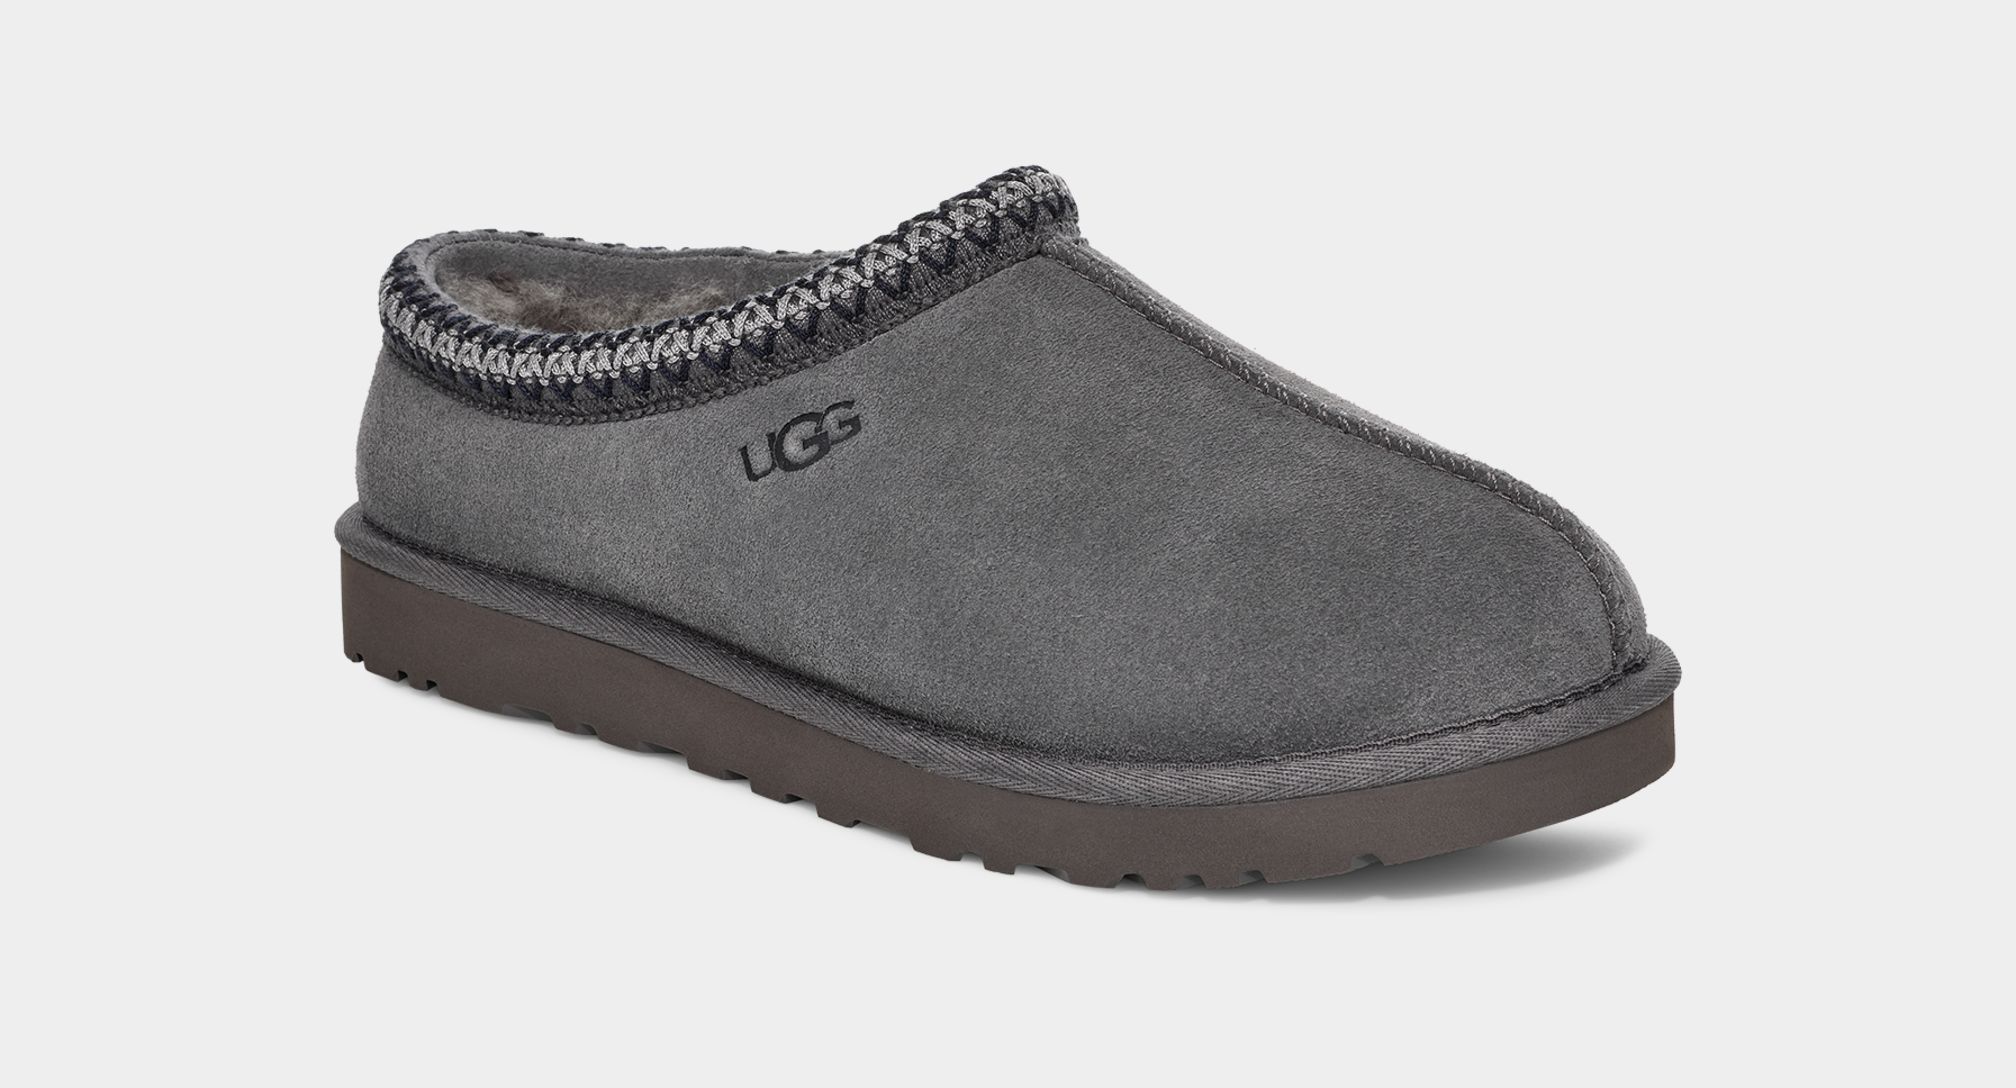 UGG® Tasman for Men | Casual House Shoes at UGG.com